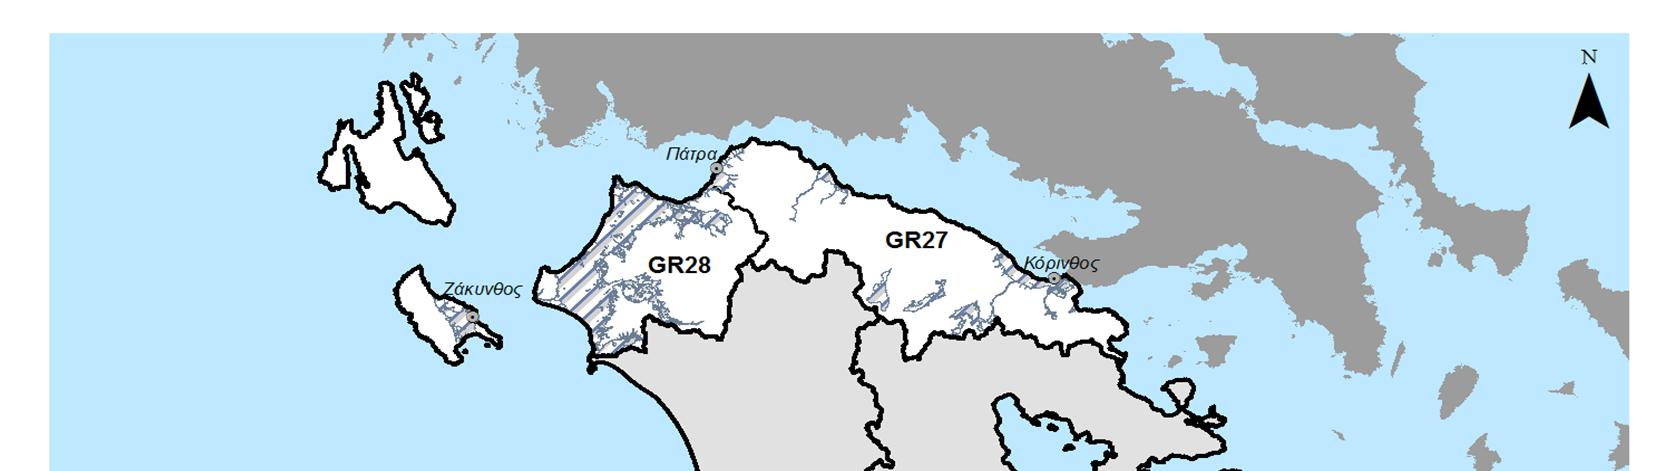 Σύμφωνα με την μεθοδολογία της προκαταρκτικής αξιολόγησης κινδύνου, στο Υδατικό Διαμέρισμα Βόρειας Πελοποννήσου ορίστηκαν 8 περιοχές που χαρακτηρίζονται ως ΖΔΥΚΠ και στις οποίες θα επικεντρώνεται ο